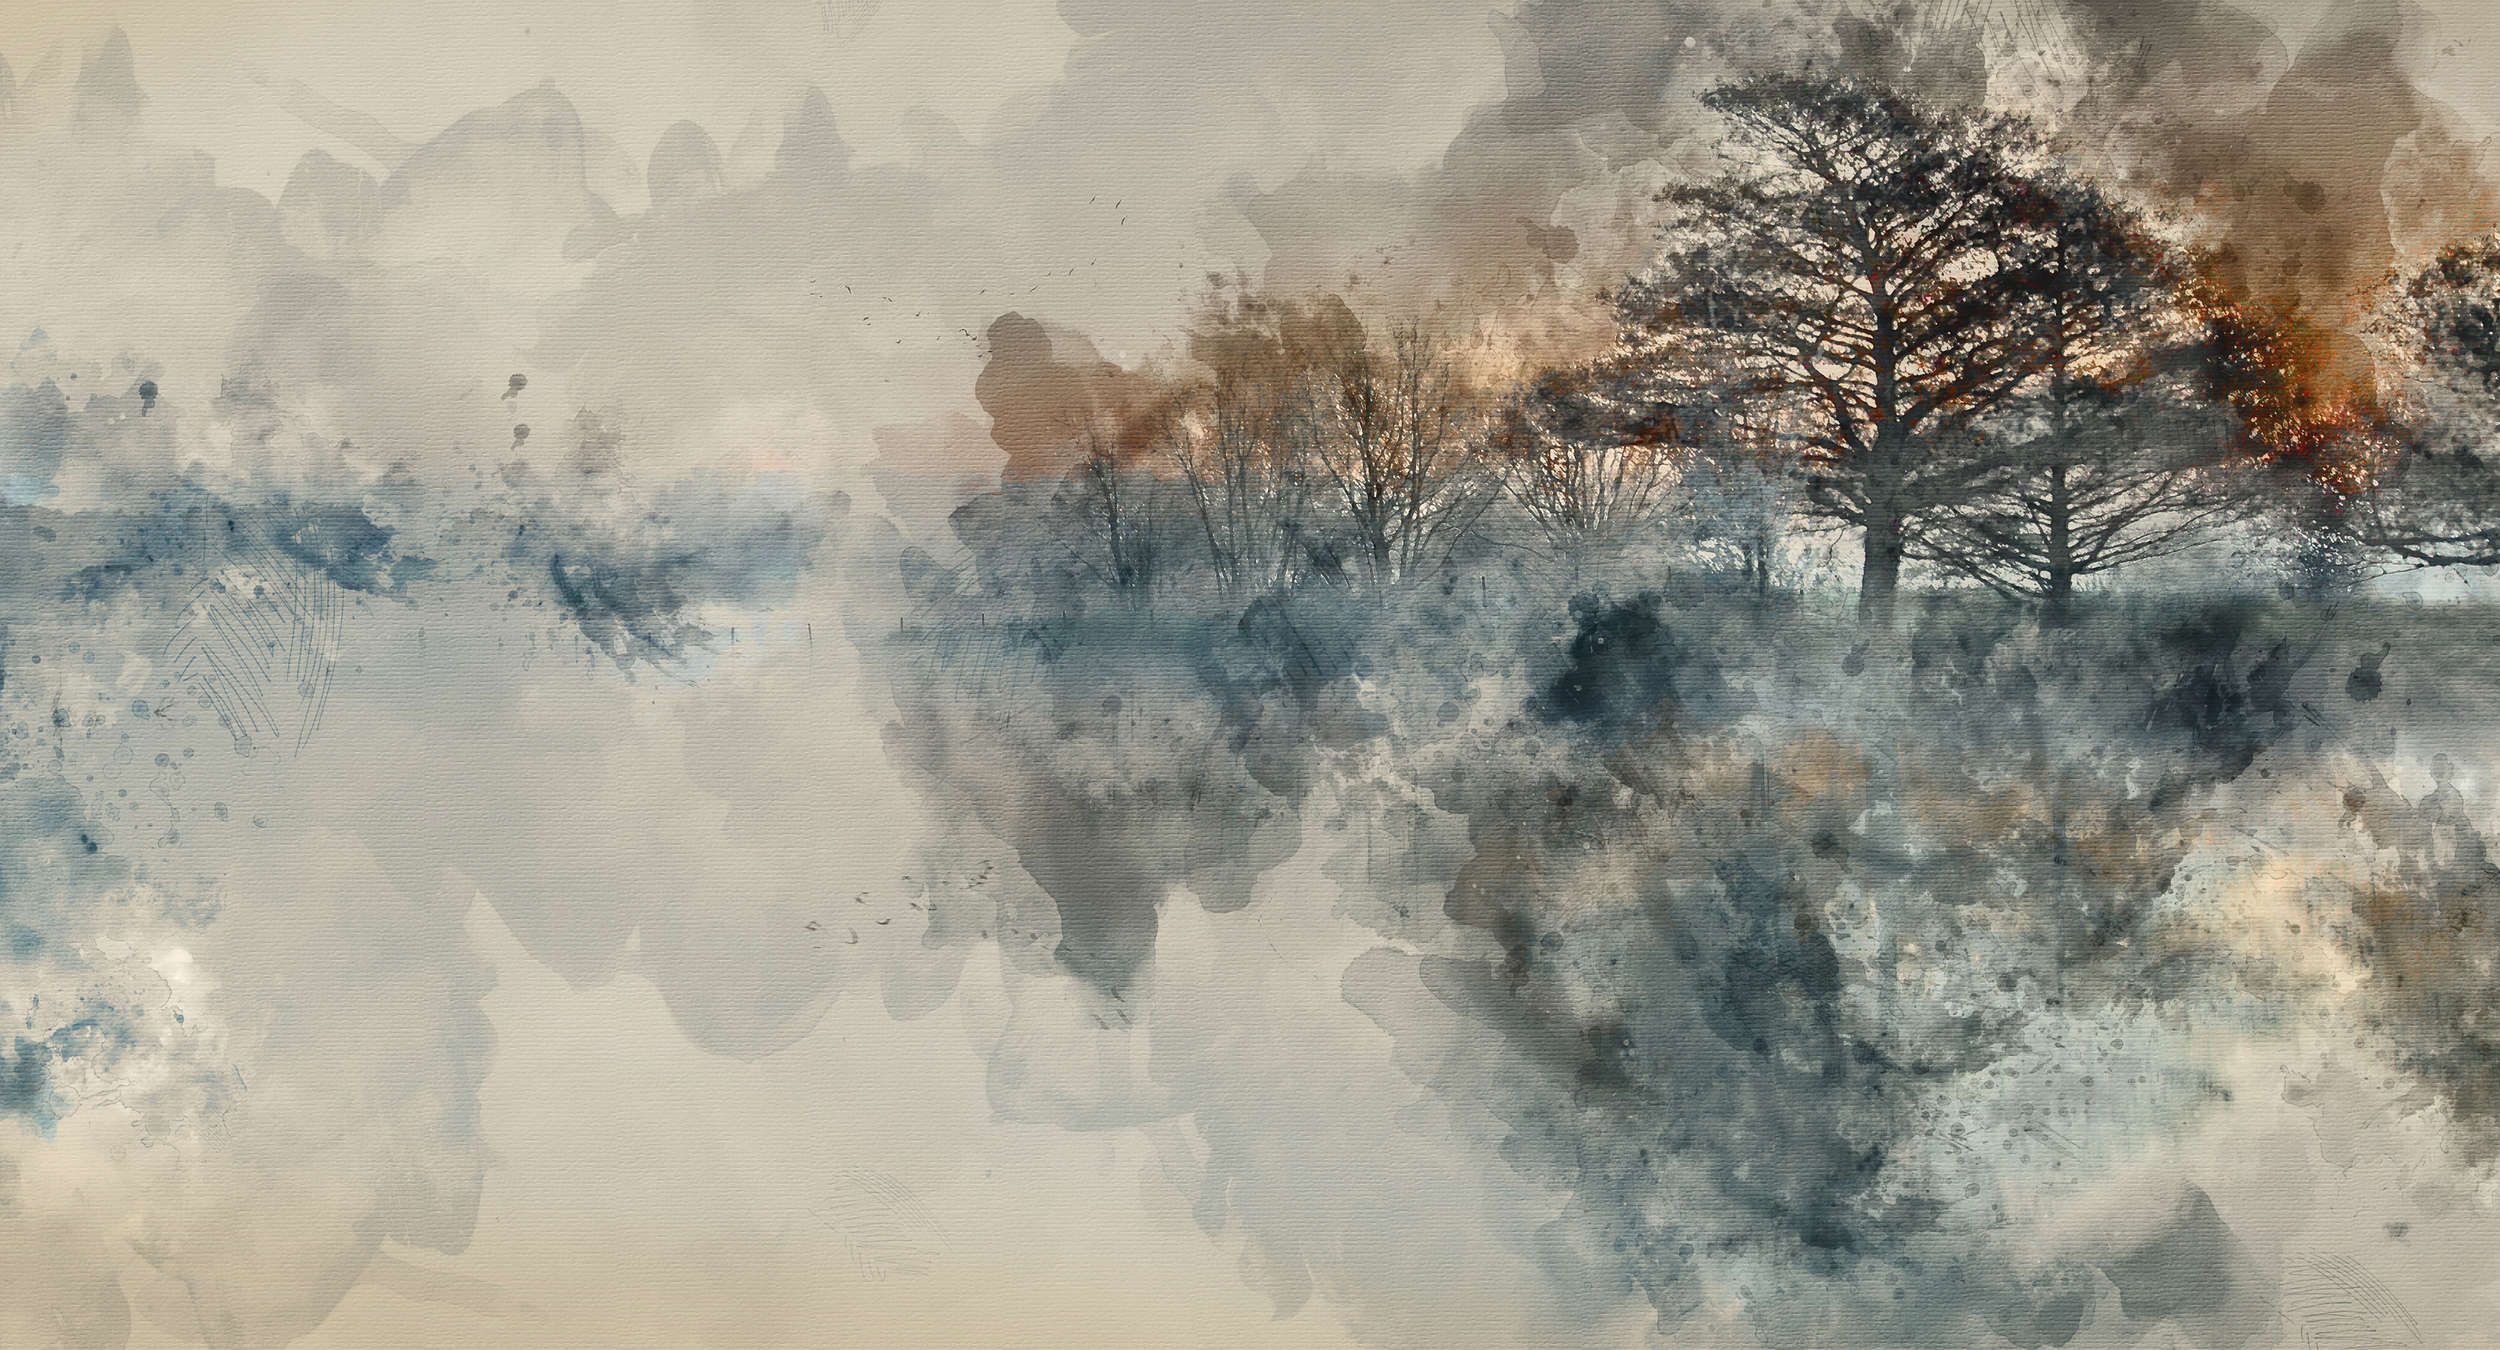             Fototapete Autumn Lake im Aquarellstil – Blau, Beige, Grau – Perlmutt Glattvlies
        